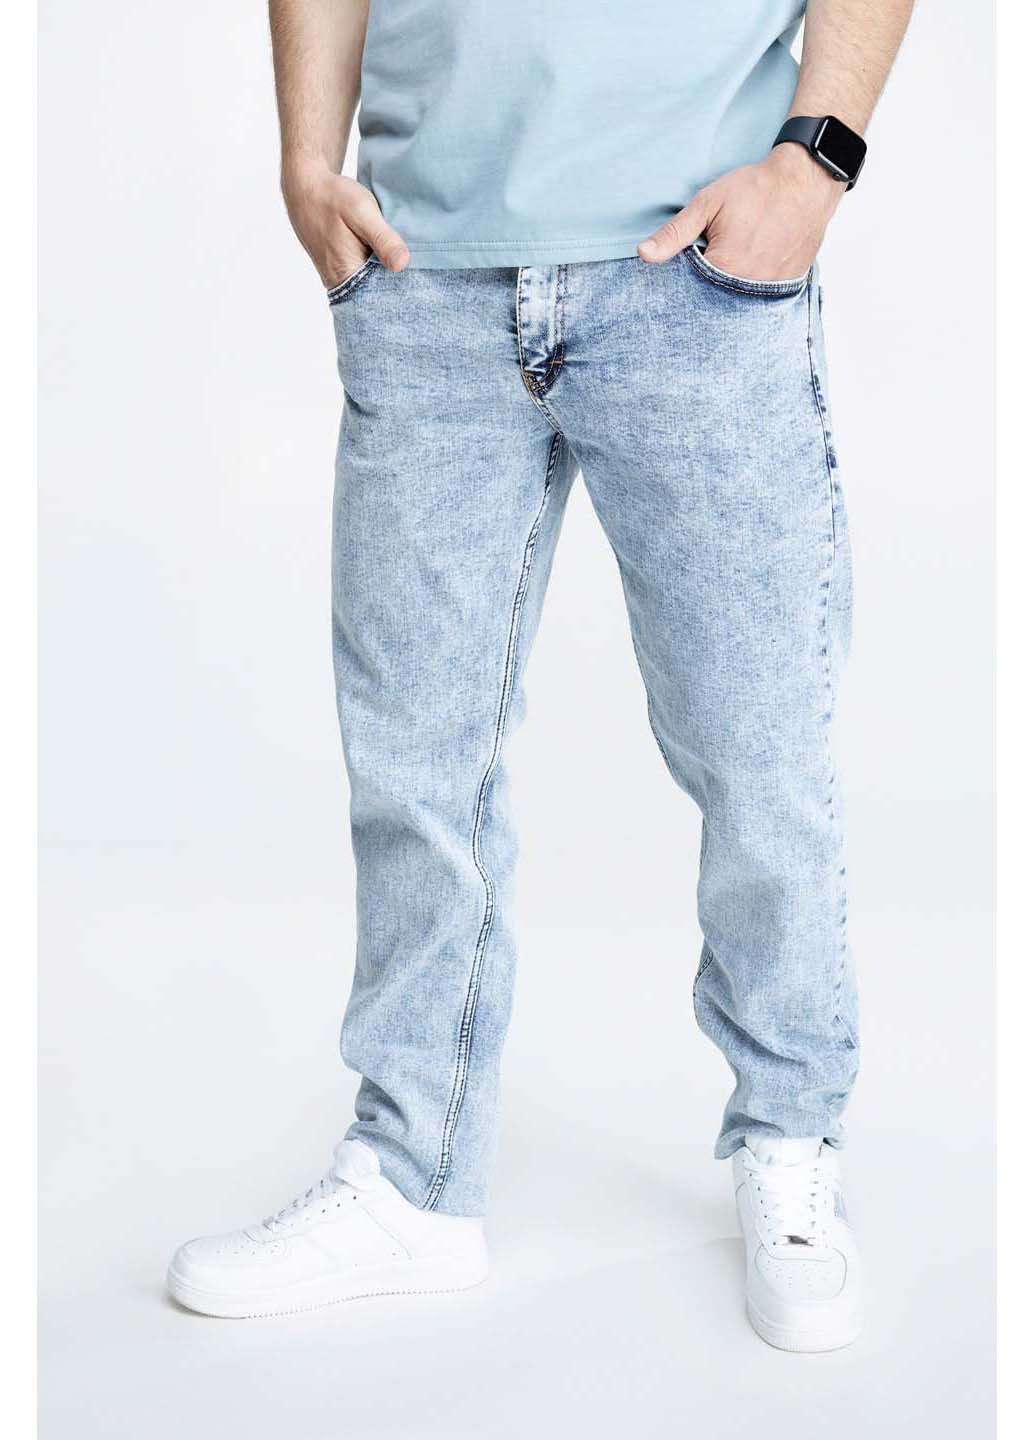 Голубые демисезонные джинсы slim fit CLUB JU